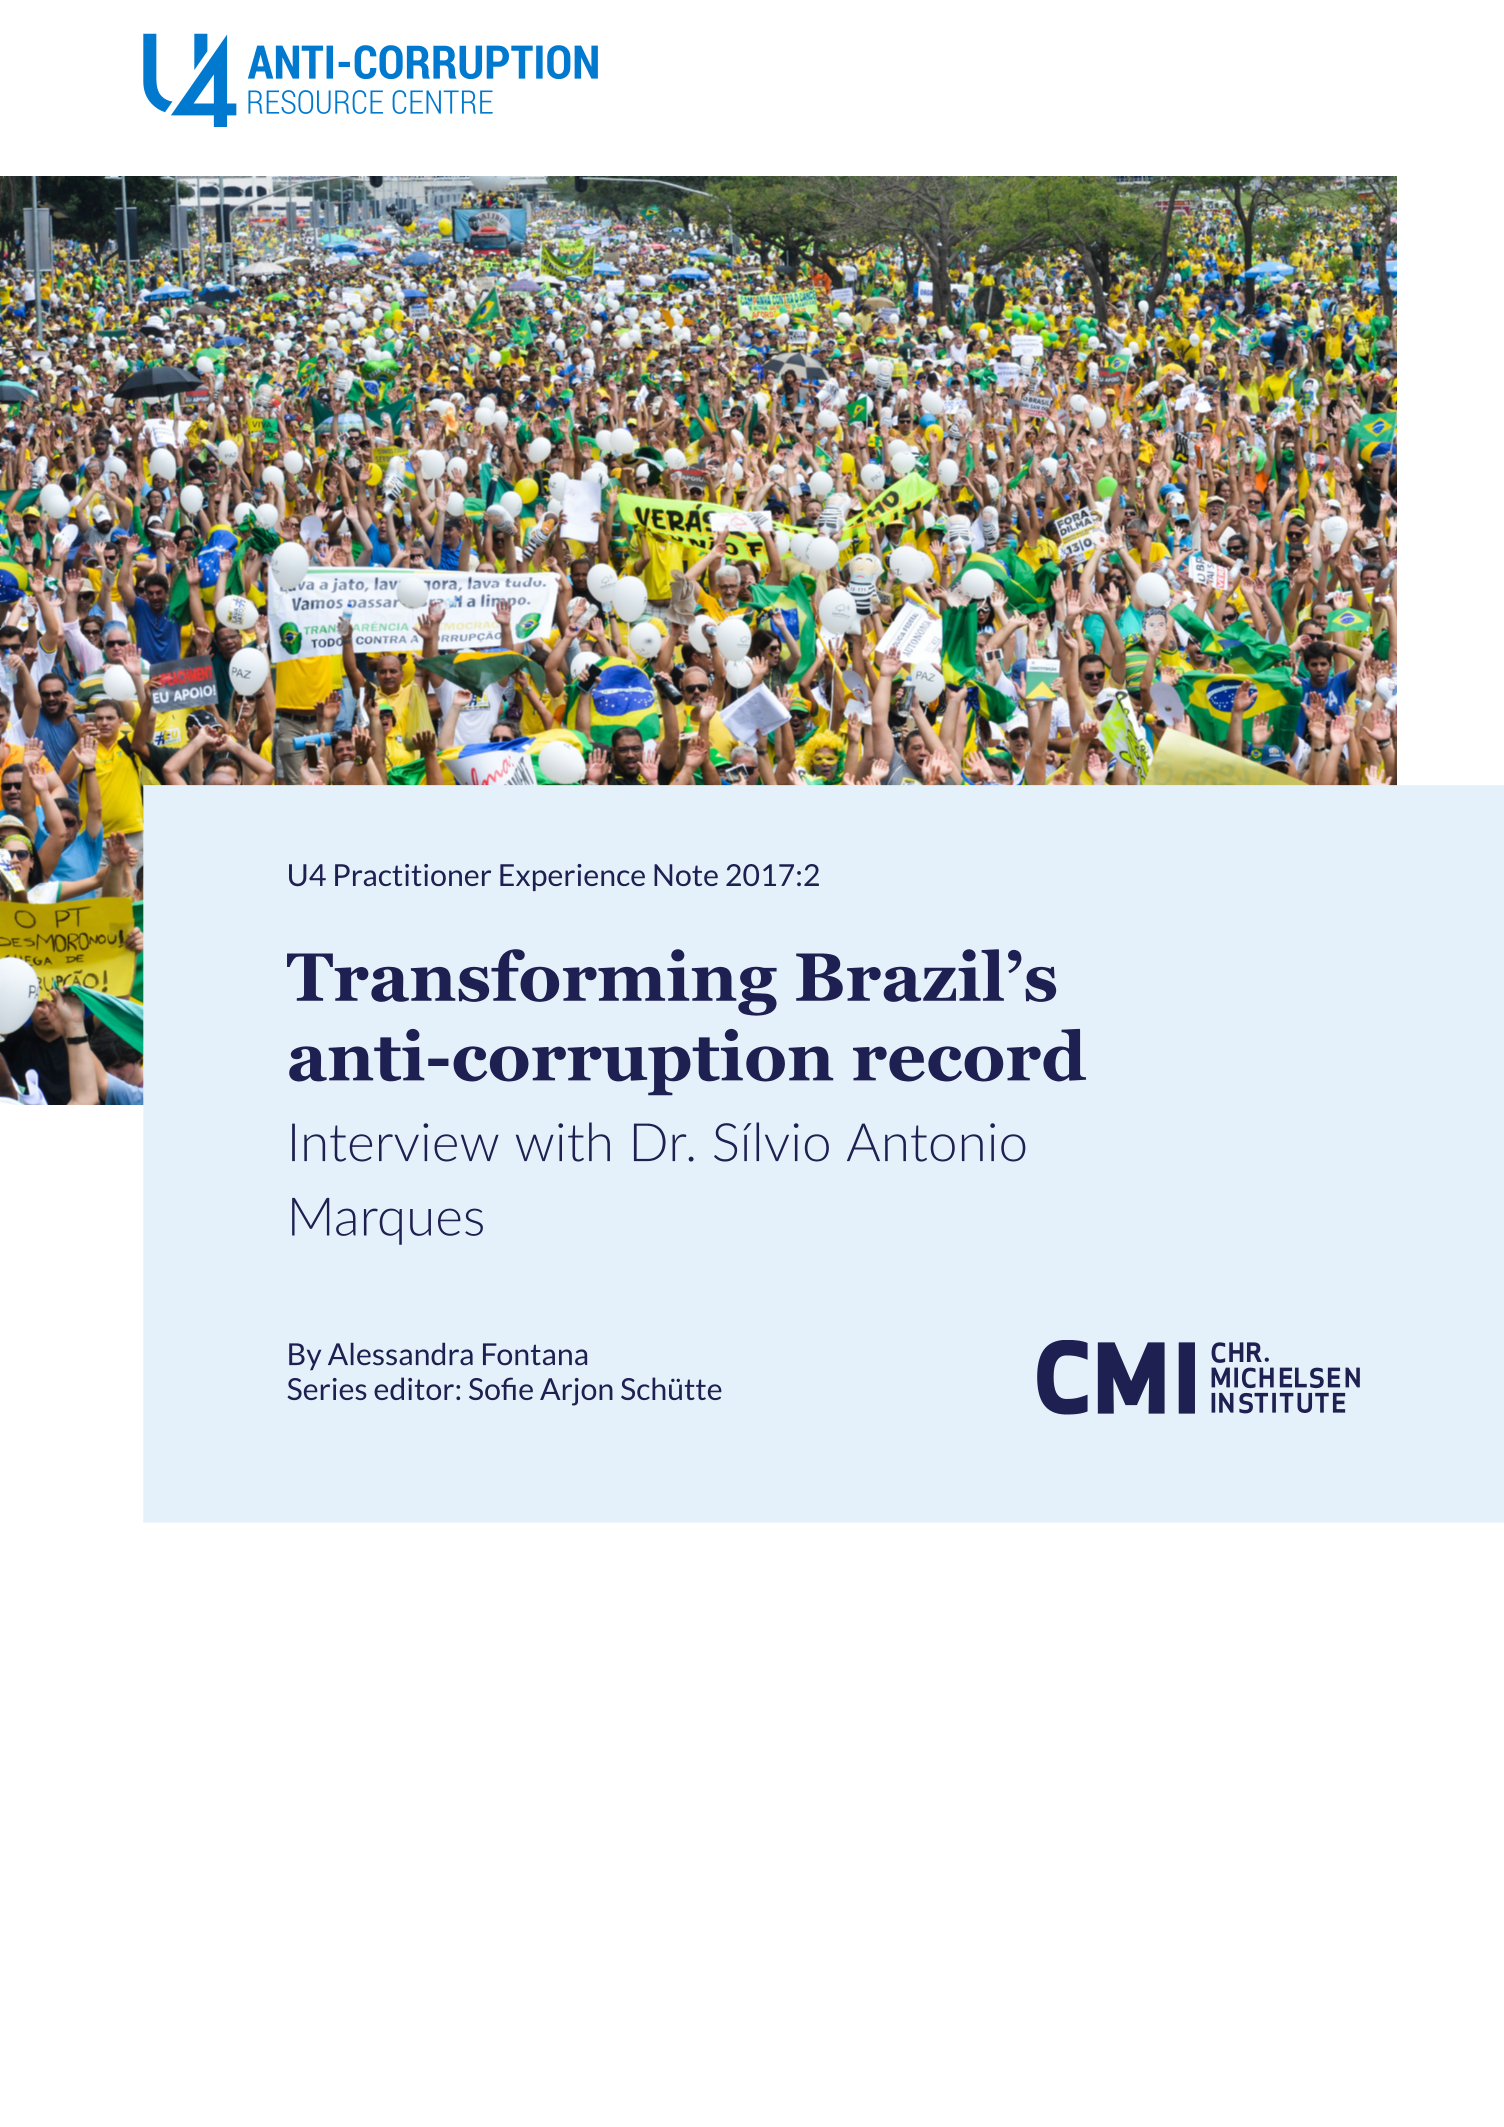 Transforming Brazil’s anti-corruption record